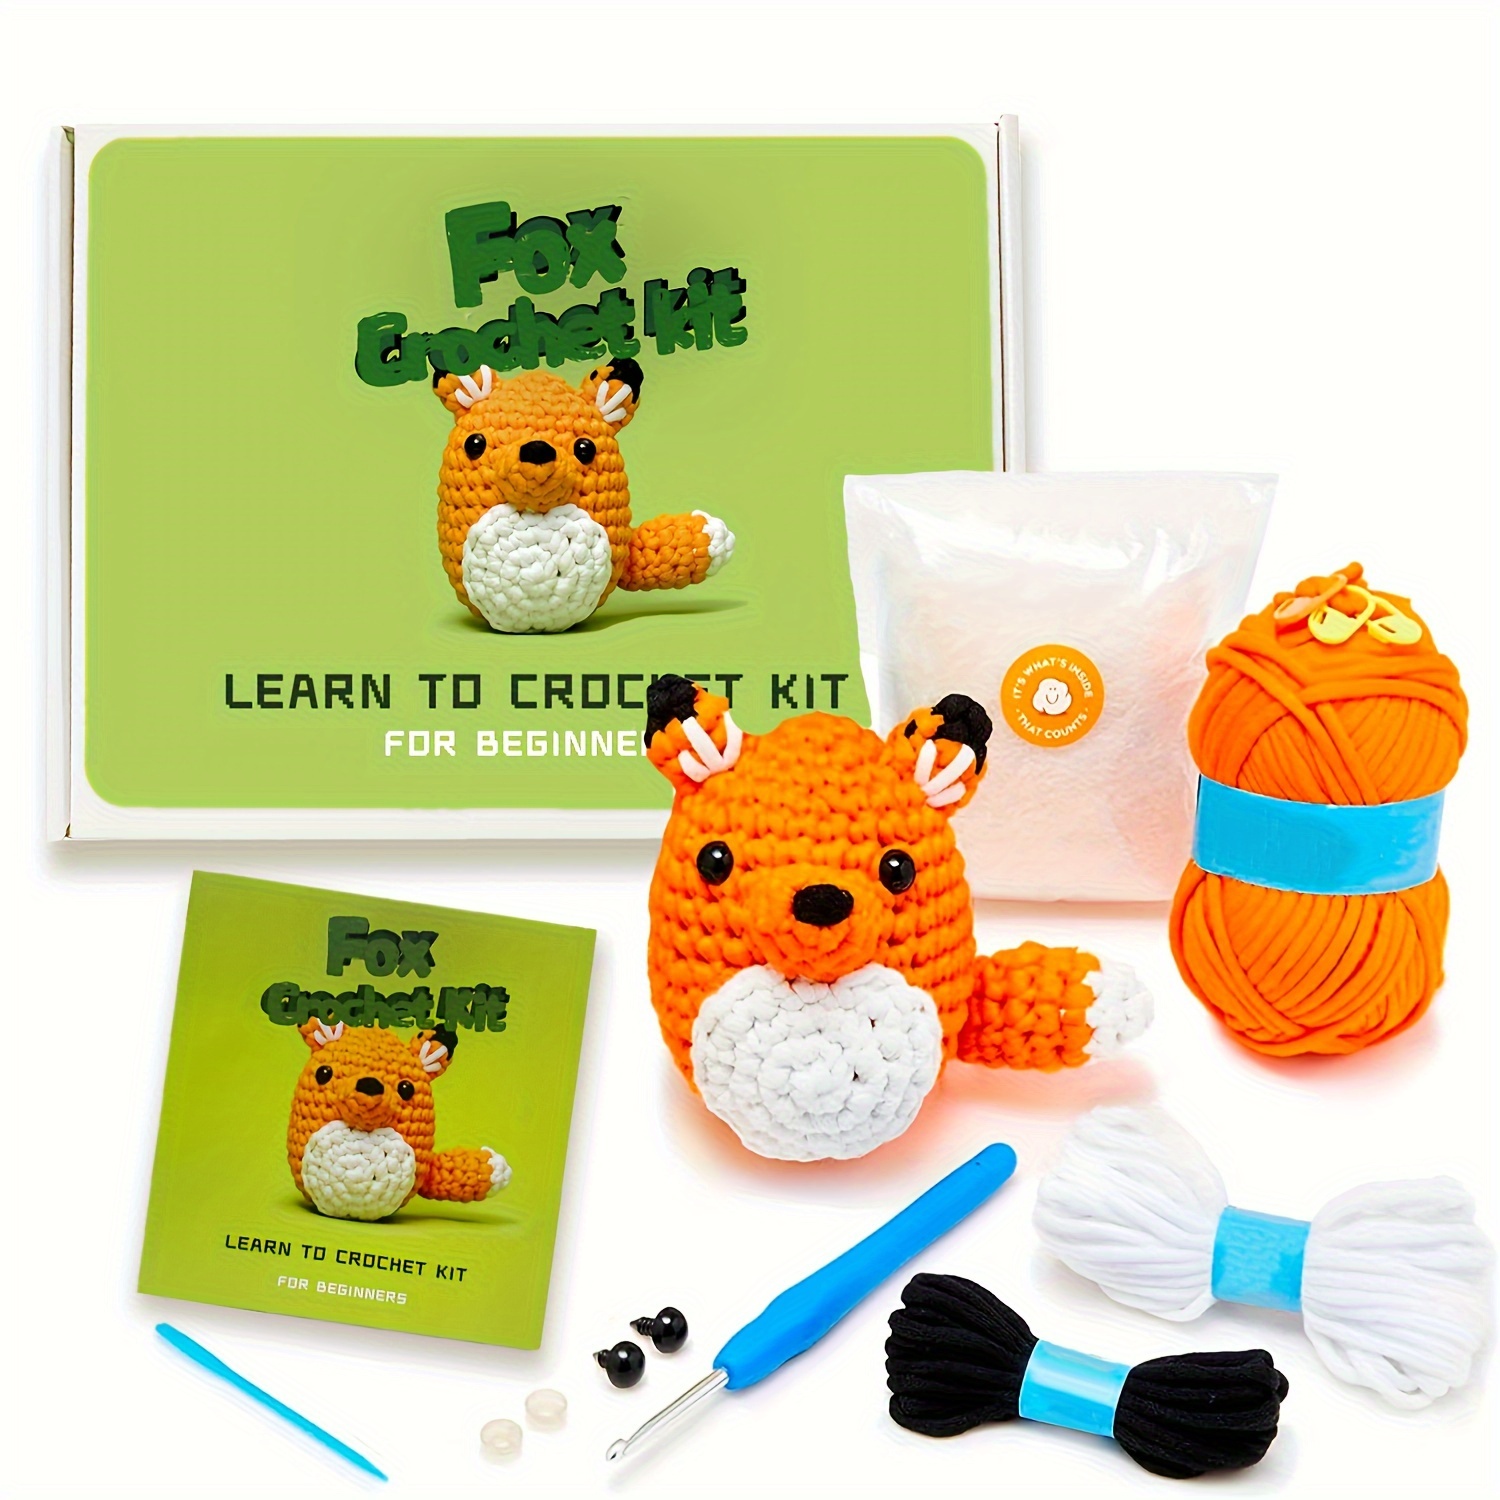 Crochet Kit for Beginners, Beginner Crochet Starter Kit W Step-by-Step Video Tutorials, Learn to Crochet Kits for Adults & Kids, DIY Knitting